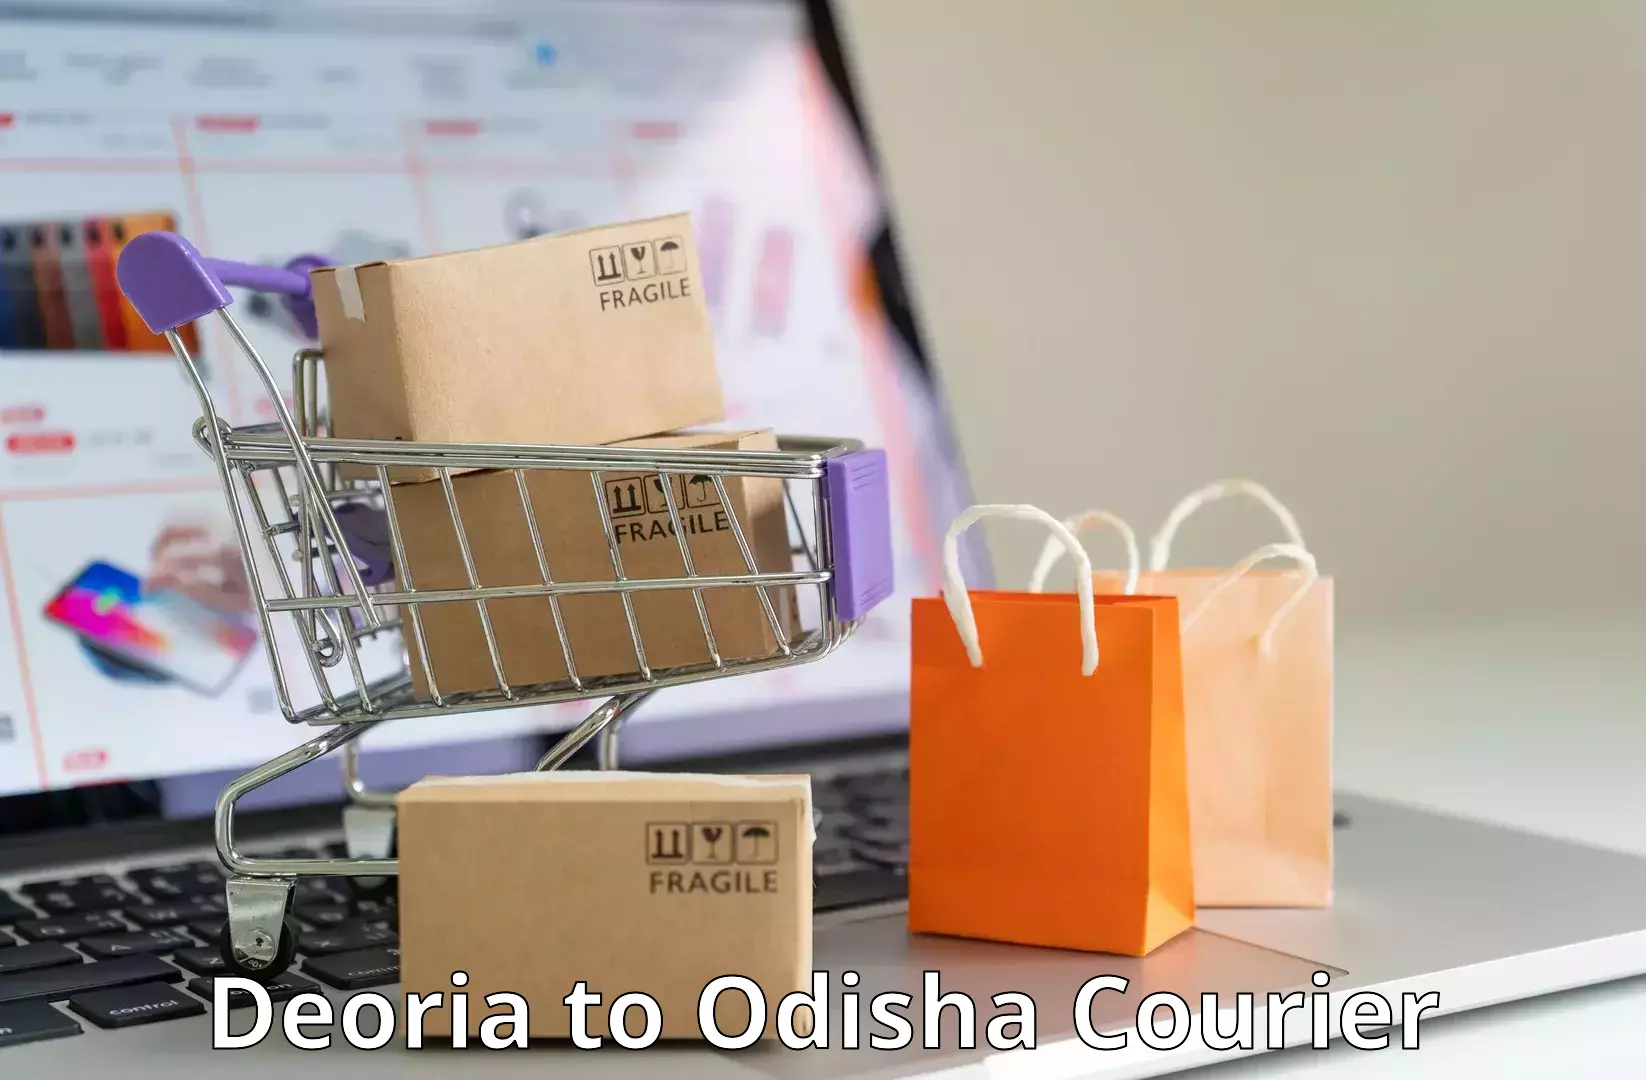 Quality courier services Deoria to Baisinga